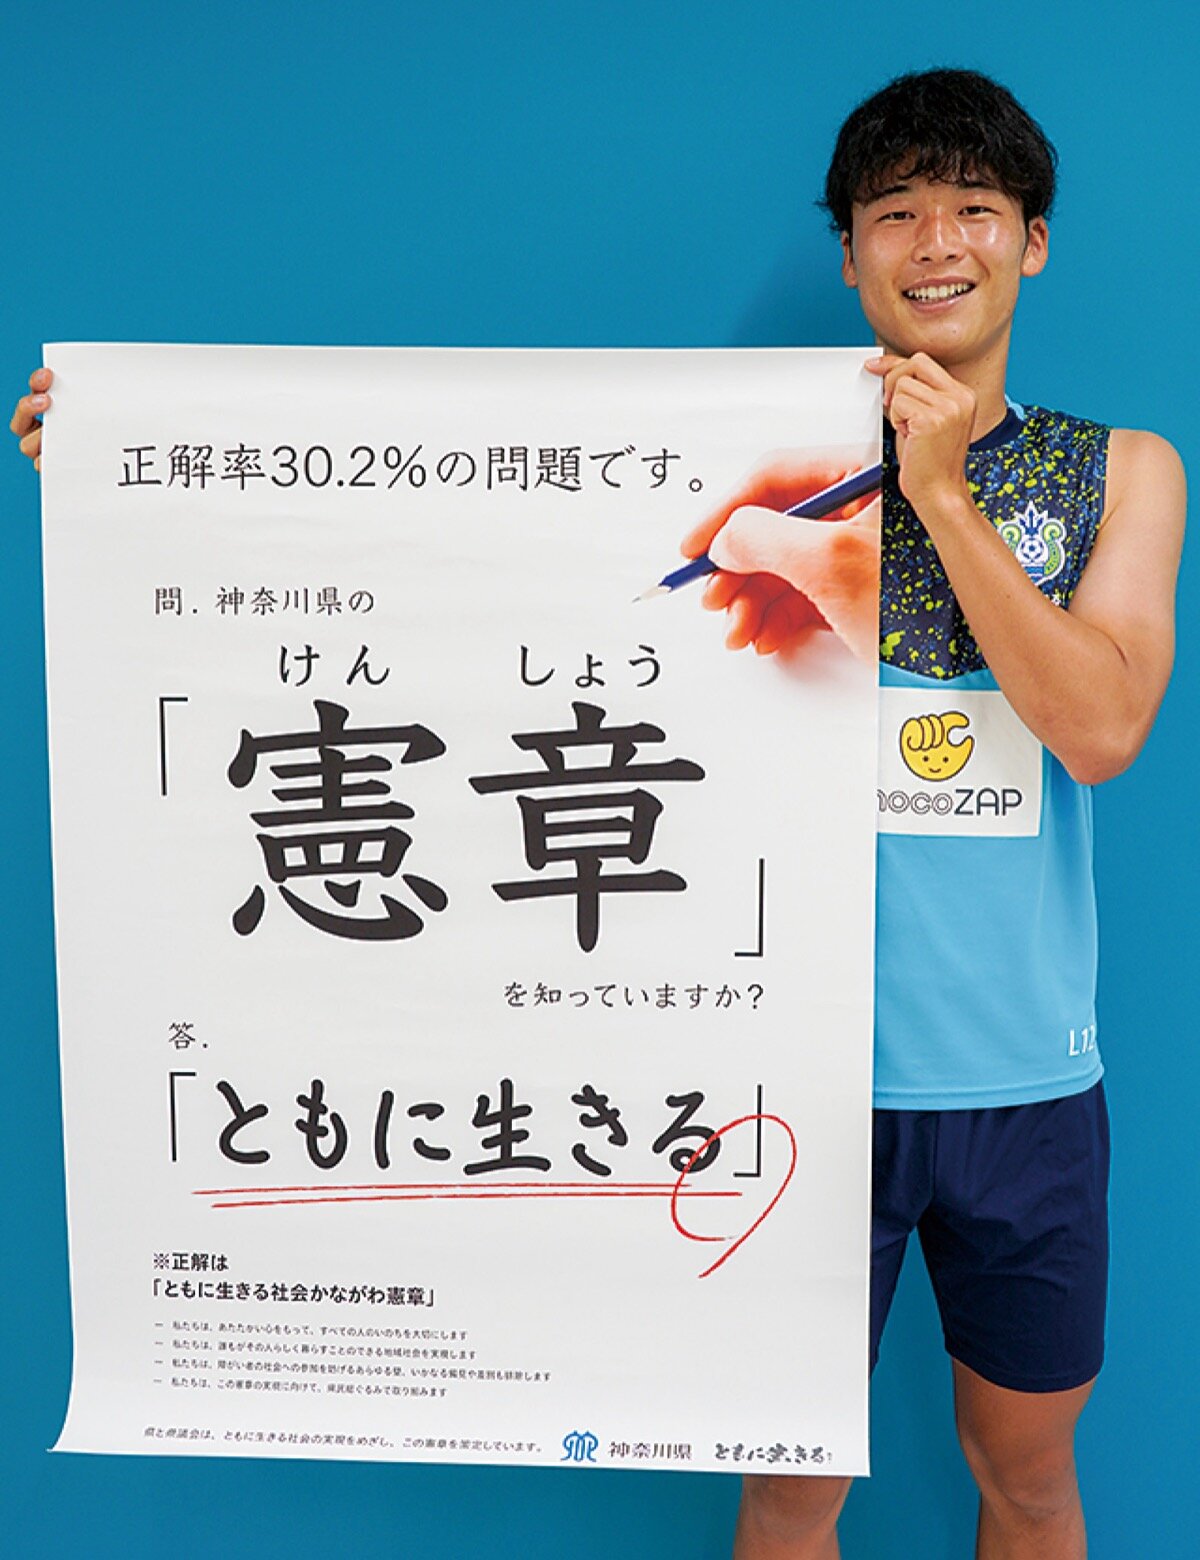 啓発ポスターを持つ鈴木章斗選手